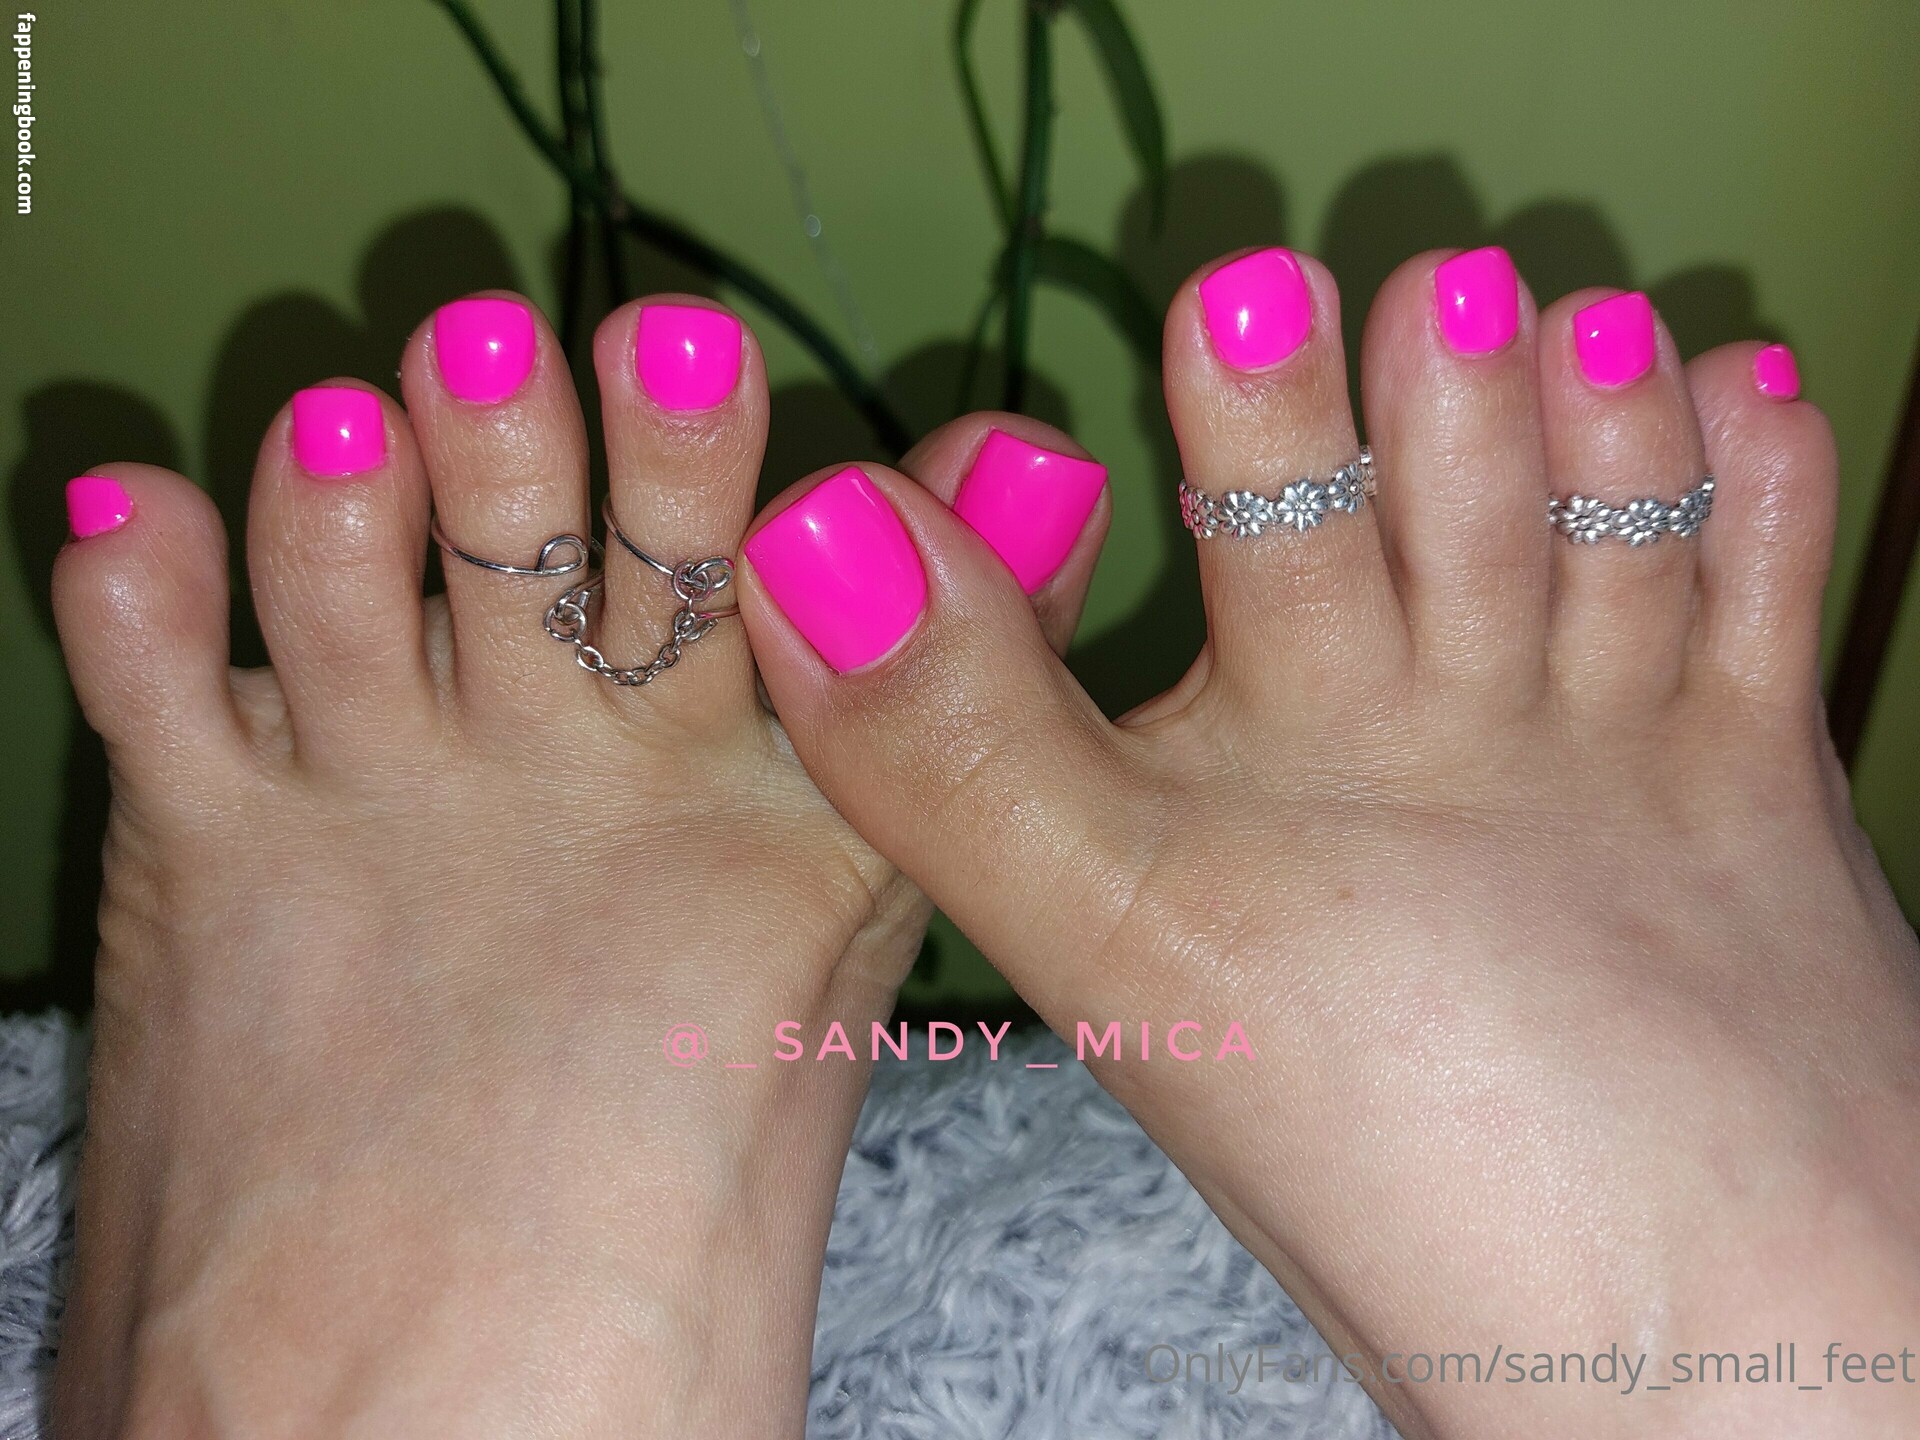 sandy_small_feet Nude OnlyFans Leaks